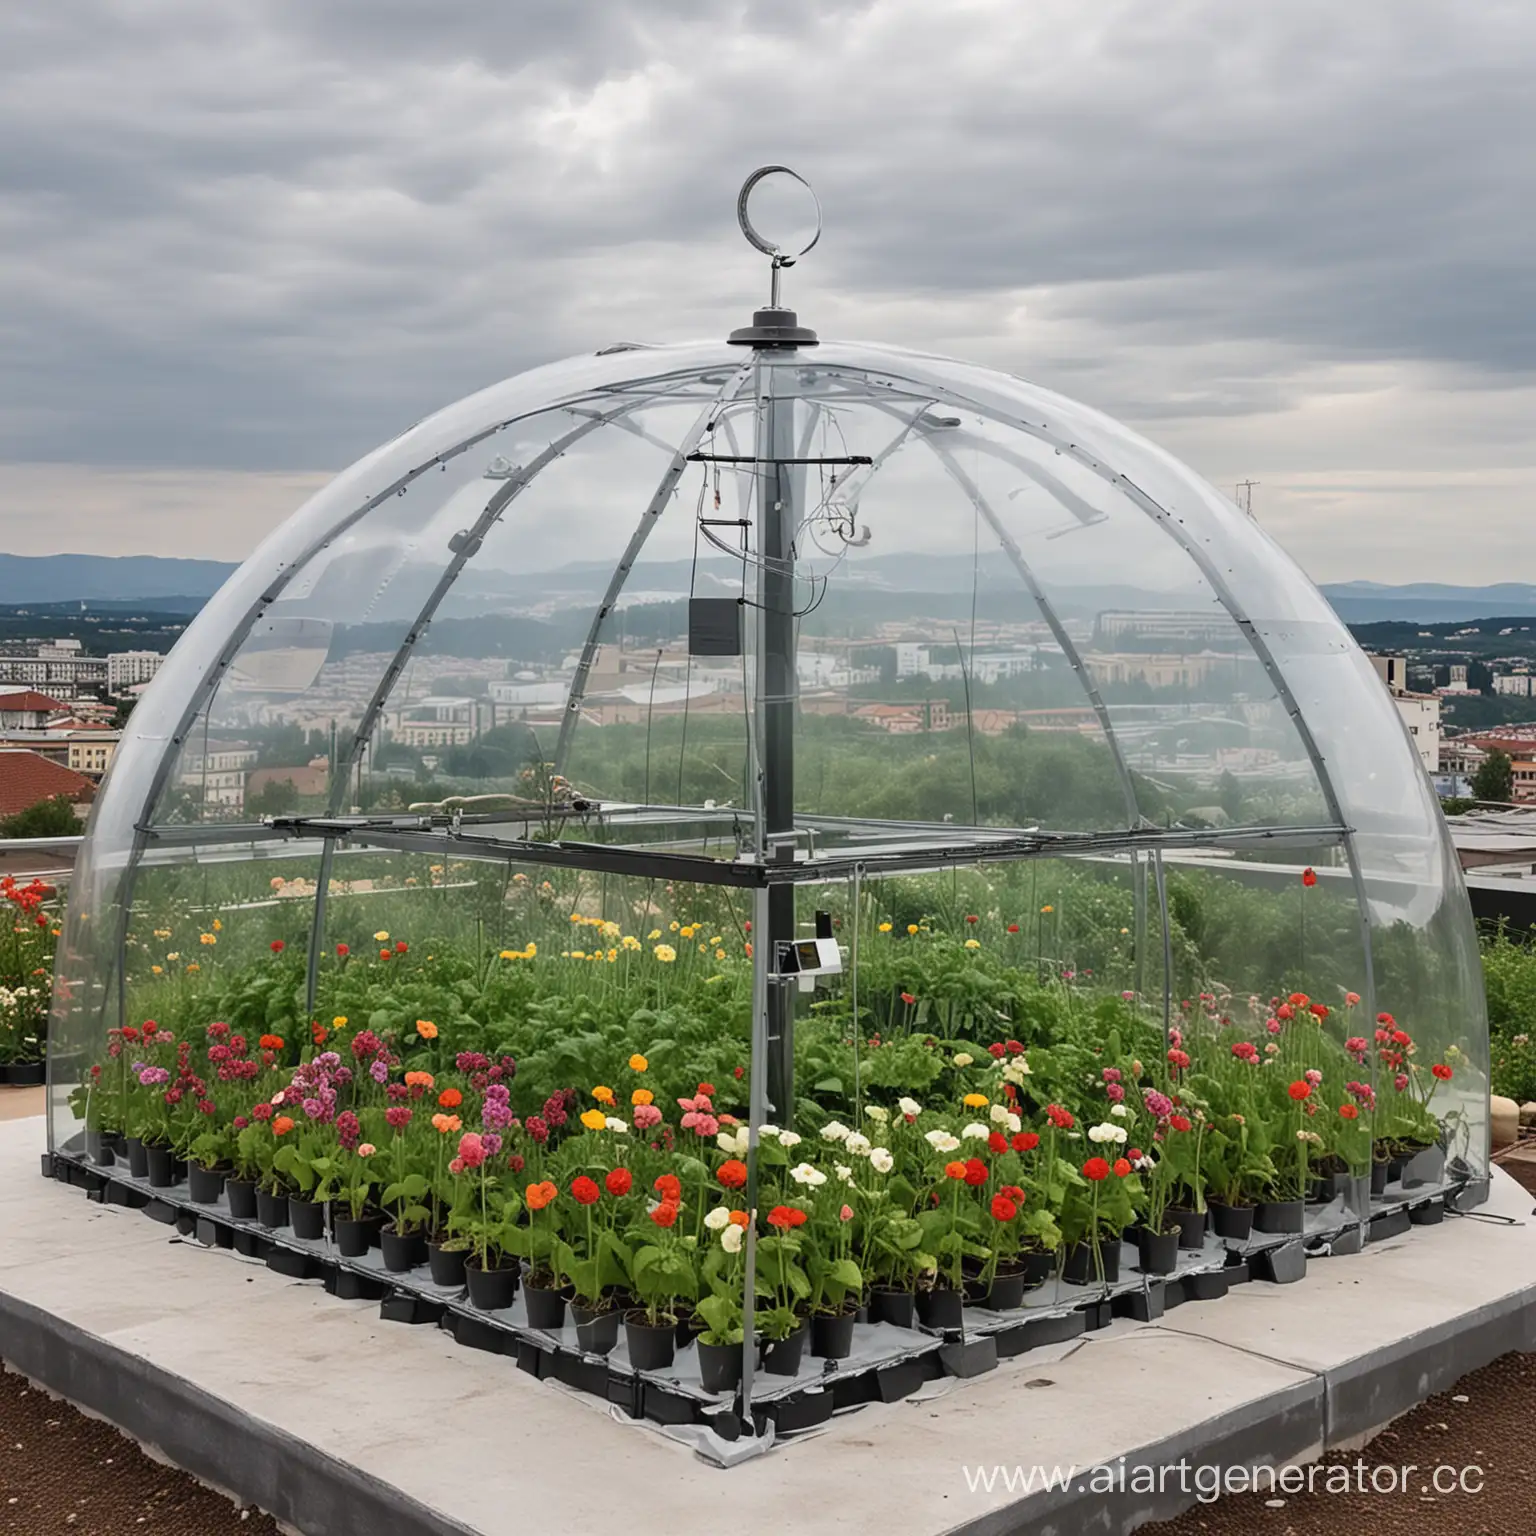 метеостанция стоит на крыше здания под стеклянным куполом, вокруг растут цветы и овощи